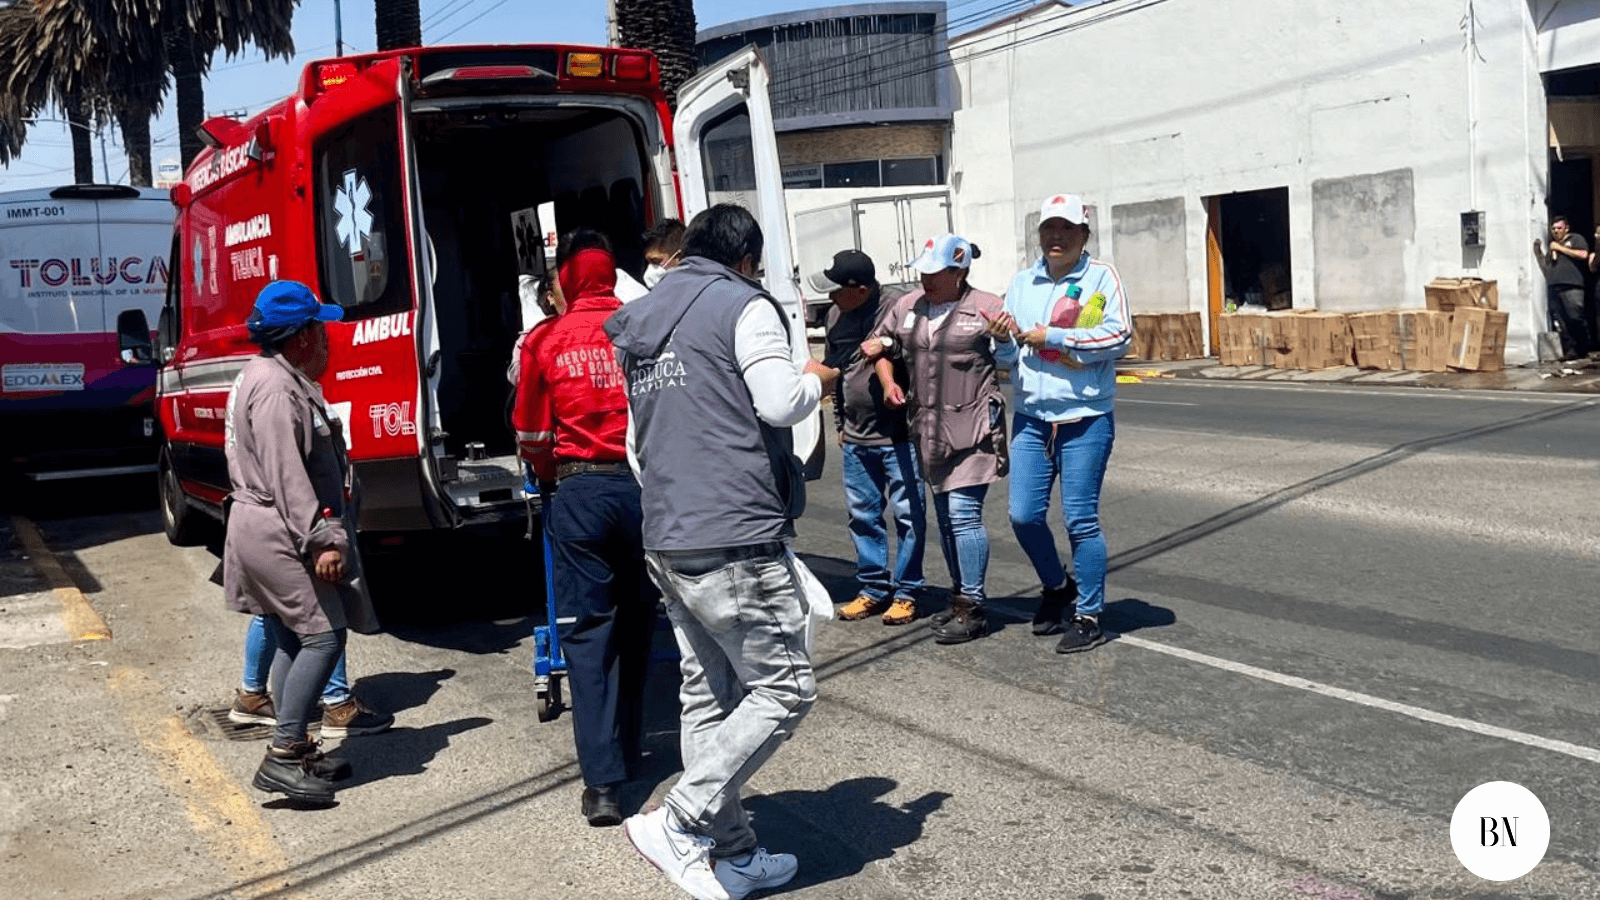 Se accidentan empleados  del ayuntamiento de Toluca